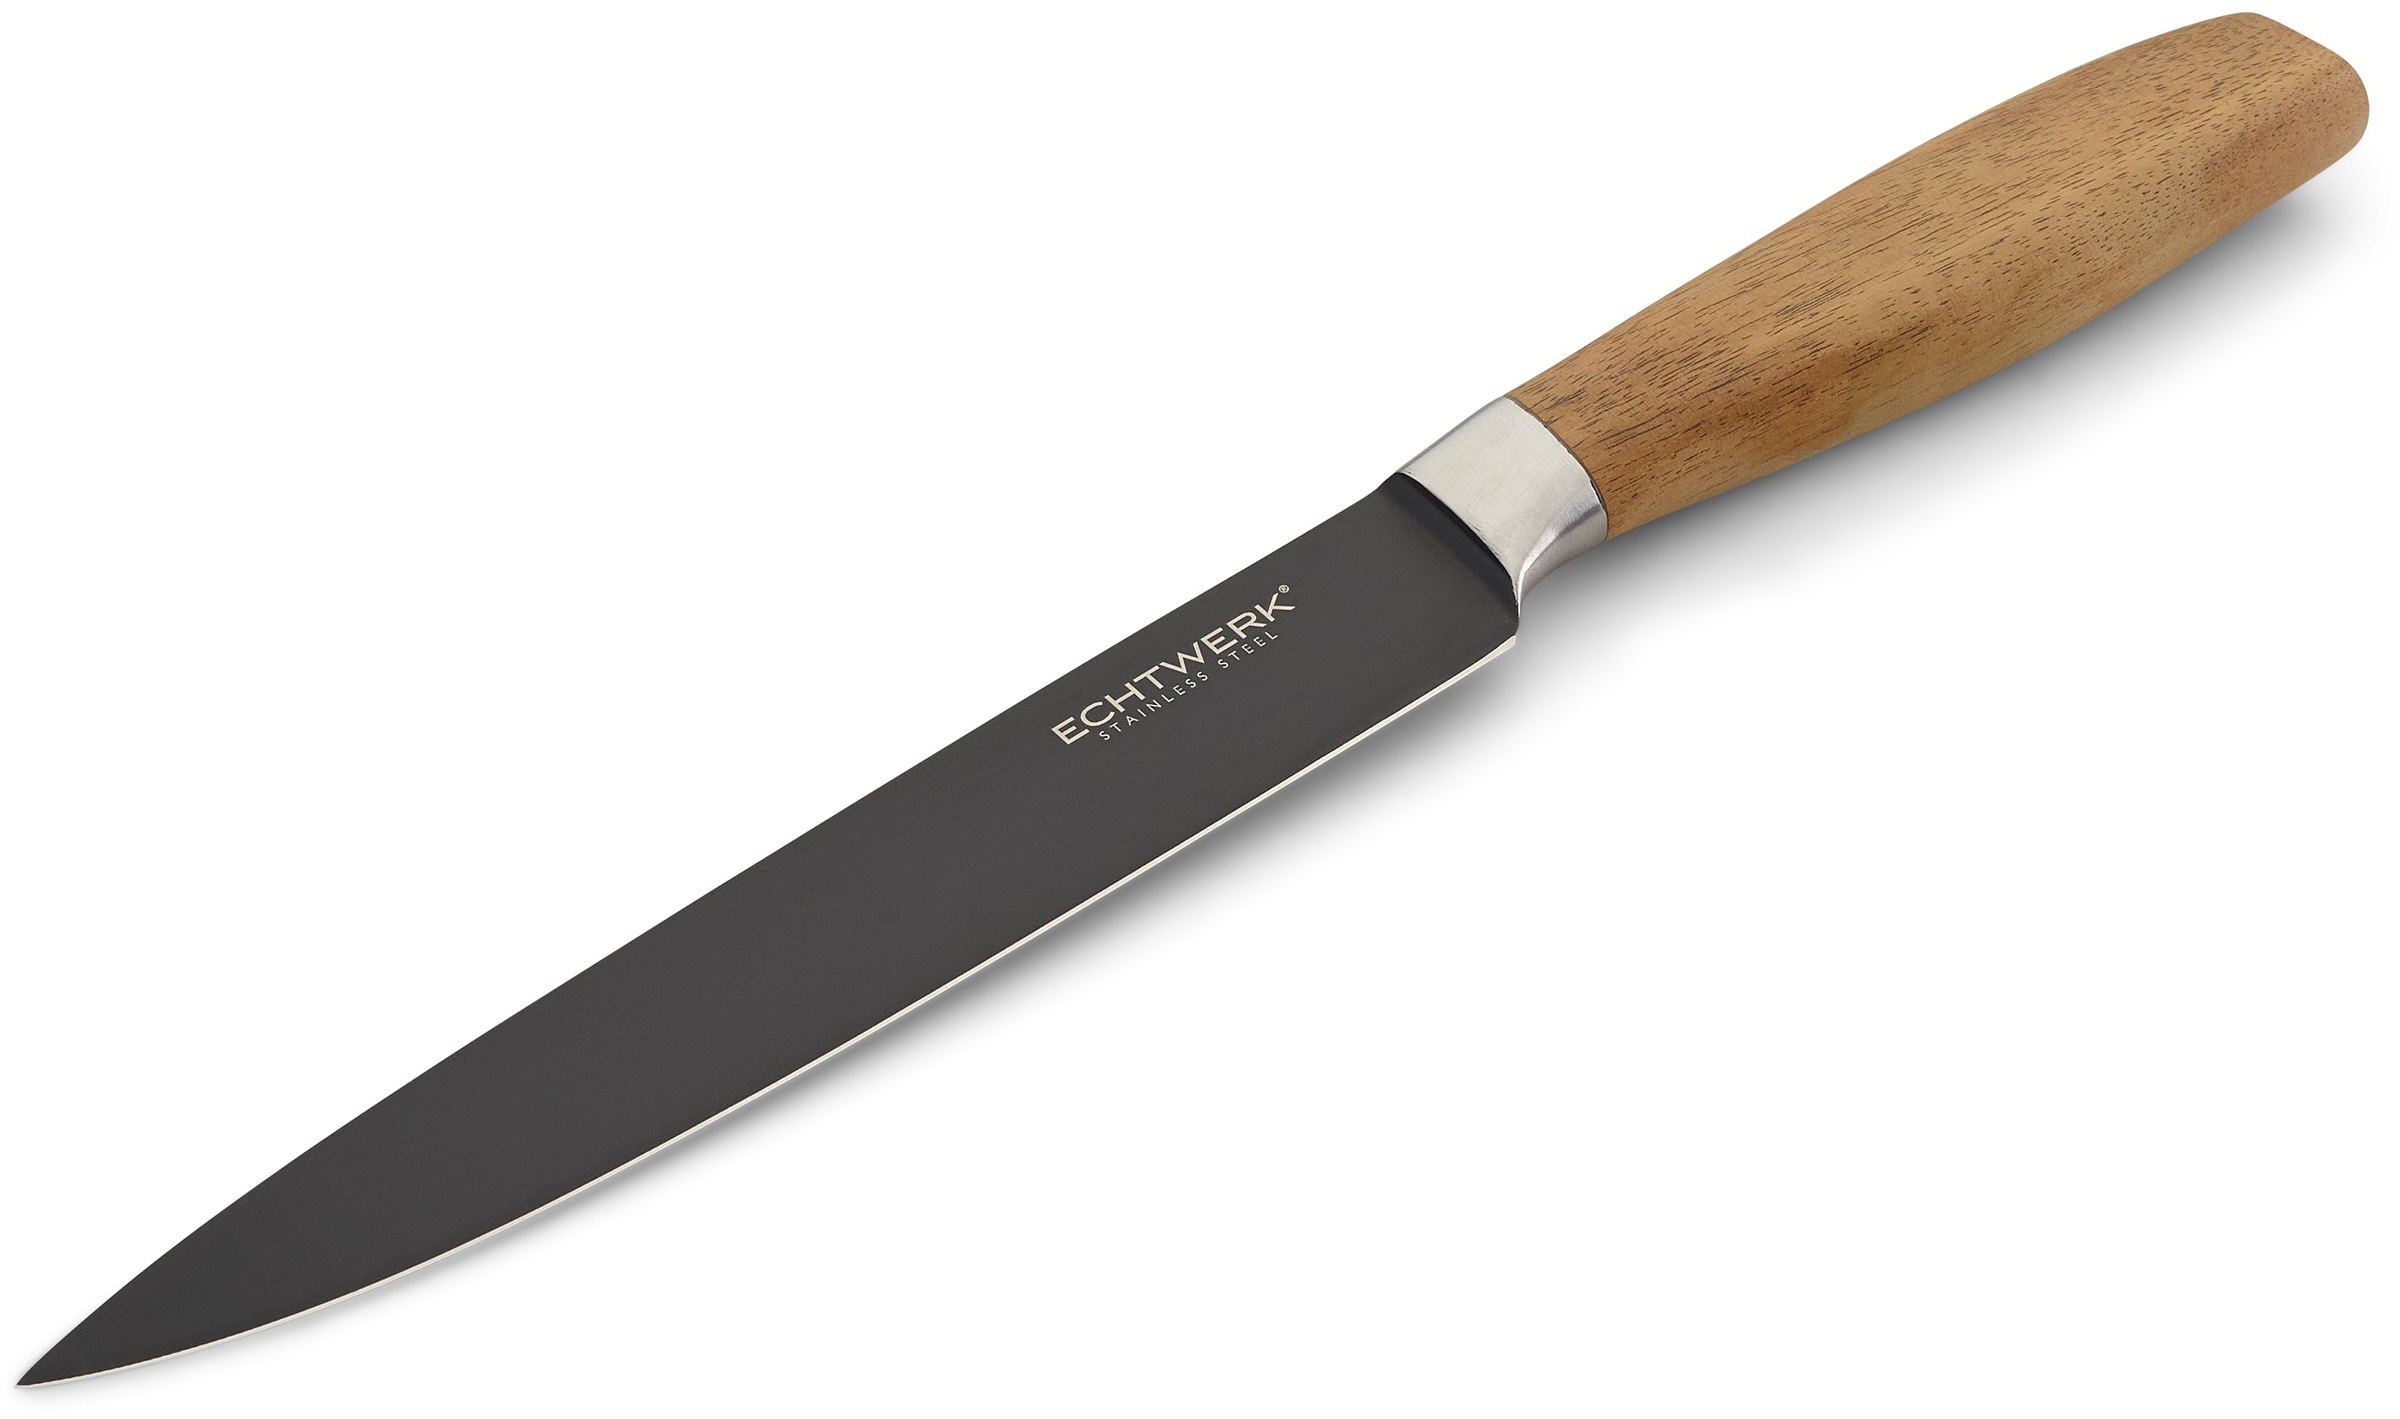 ECHTWERK Fleischmesser »Classic«, (1 tlg.), aus hochwertigem Stahl, Akazienholzgriff, Black-Edition, 20 cm